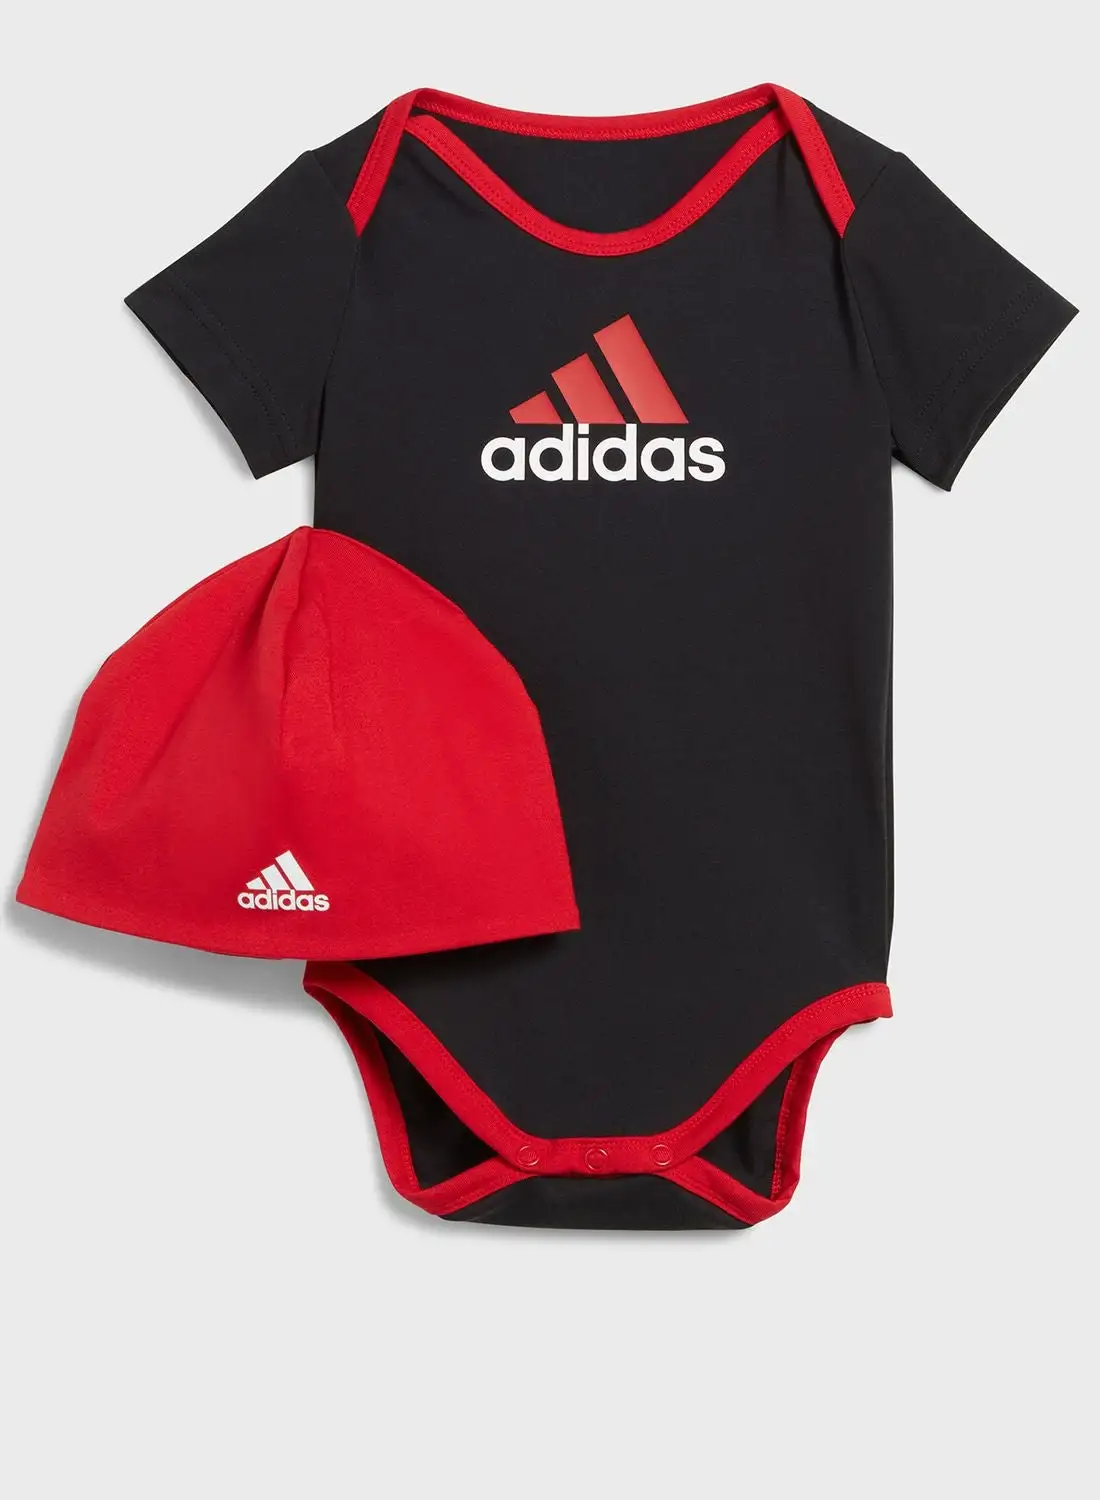 Adidas Essentials Big Logo Bodysuit And Beanie Gift Set Kids